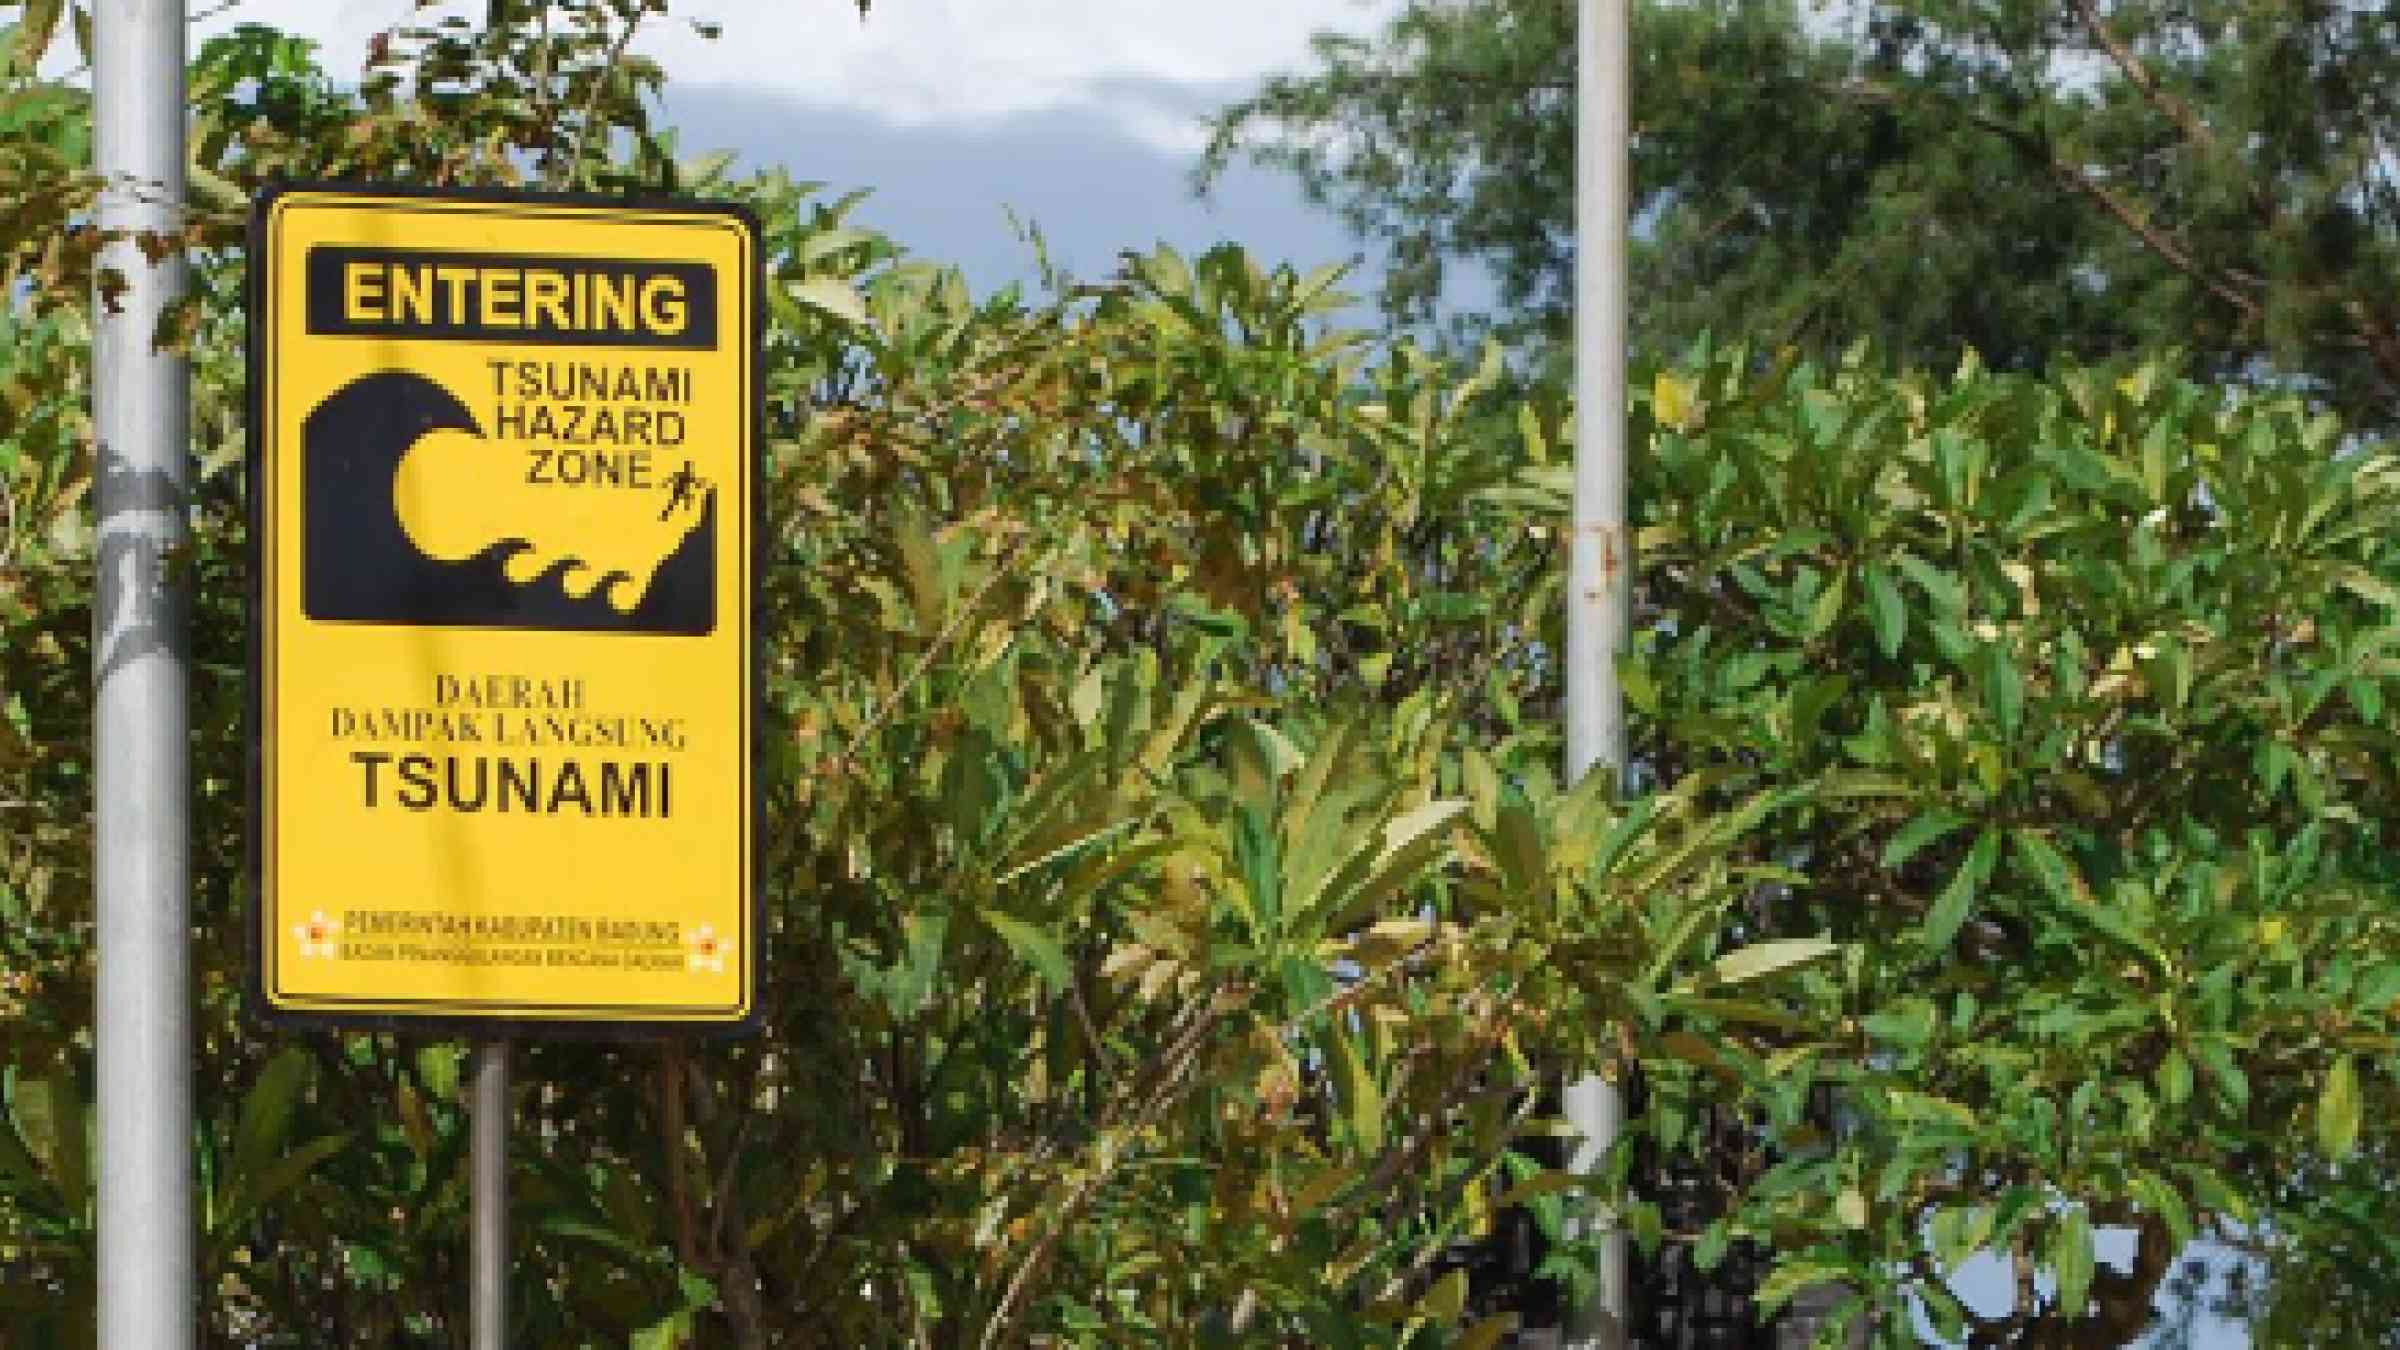 Warning sign reading "Tsunami hazard zone"